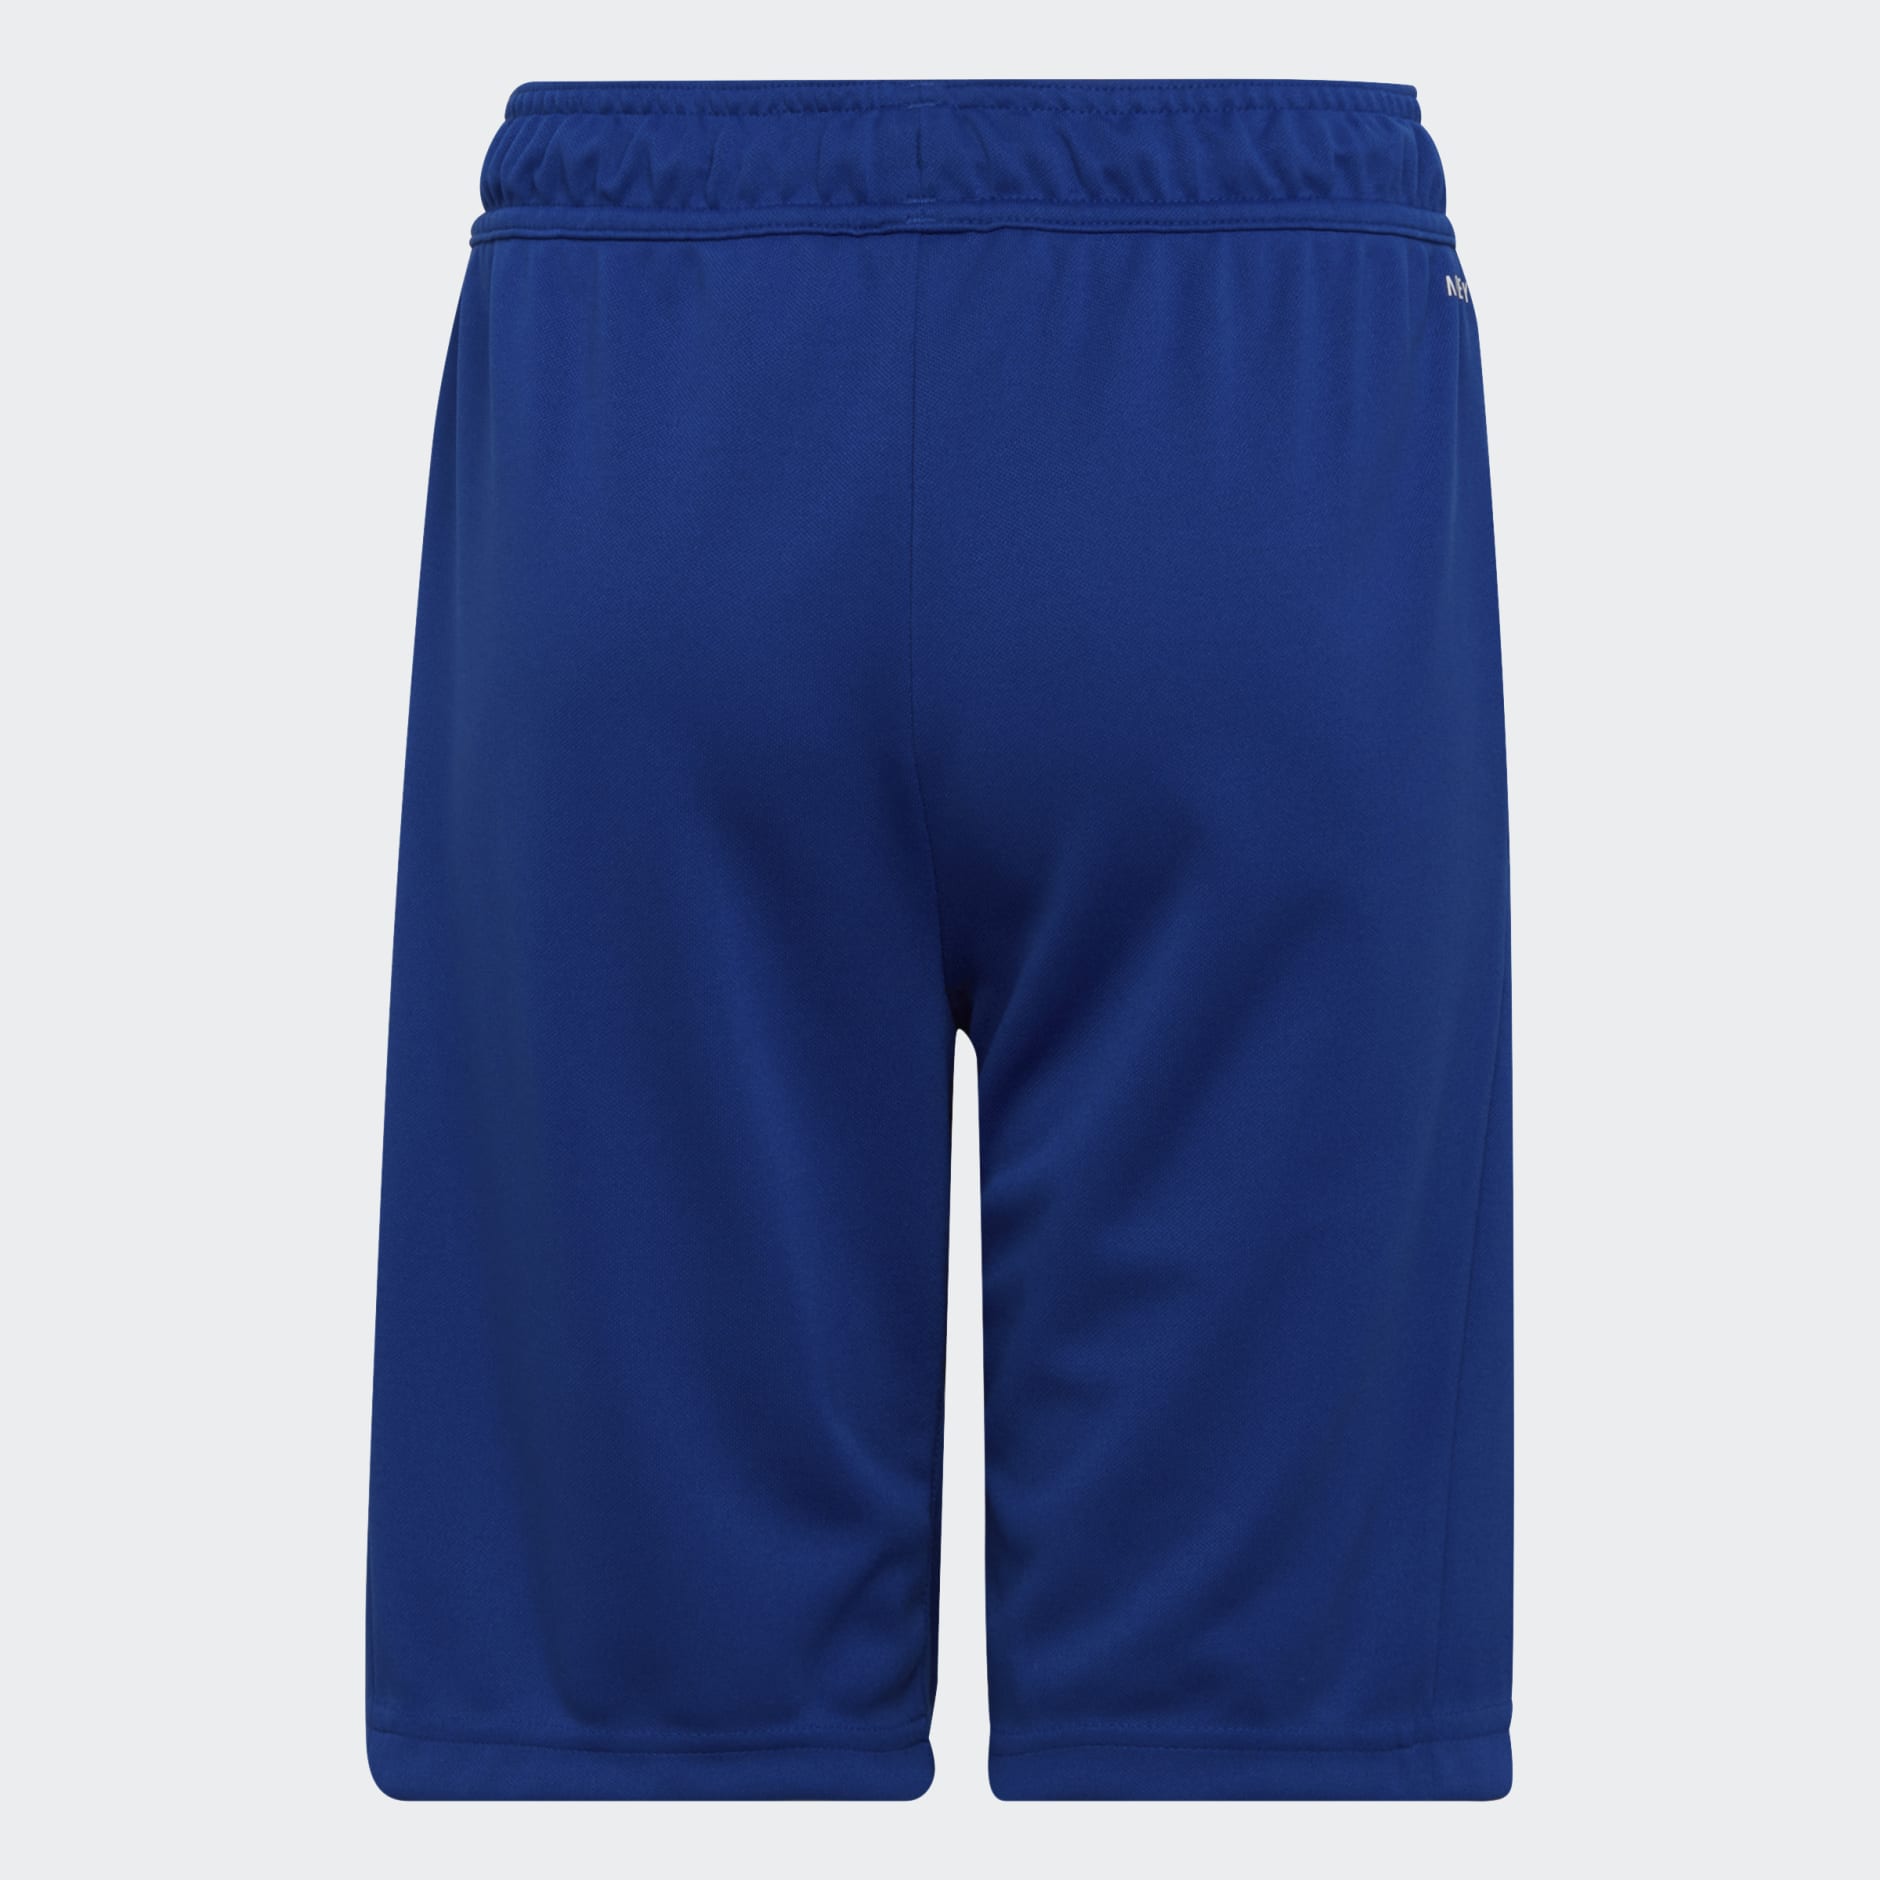 Kids Clothing - Designed 2 Move Shorts - Blue | adidas Qatar